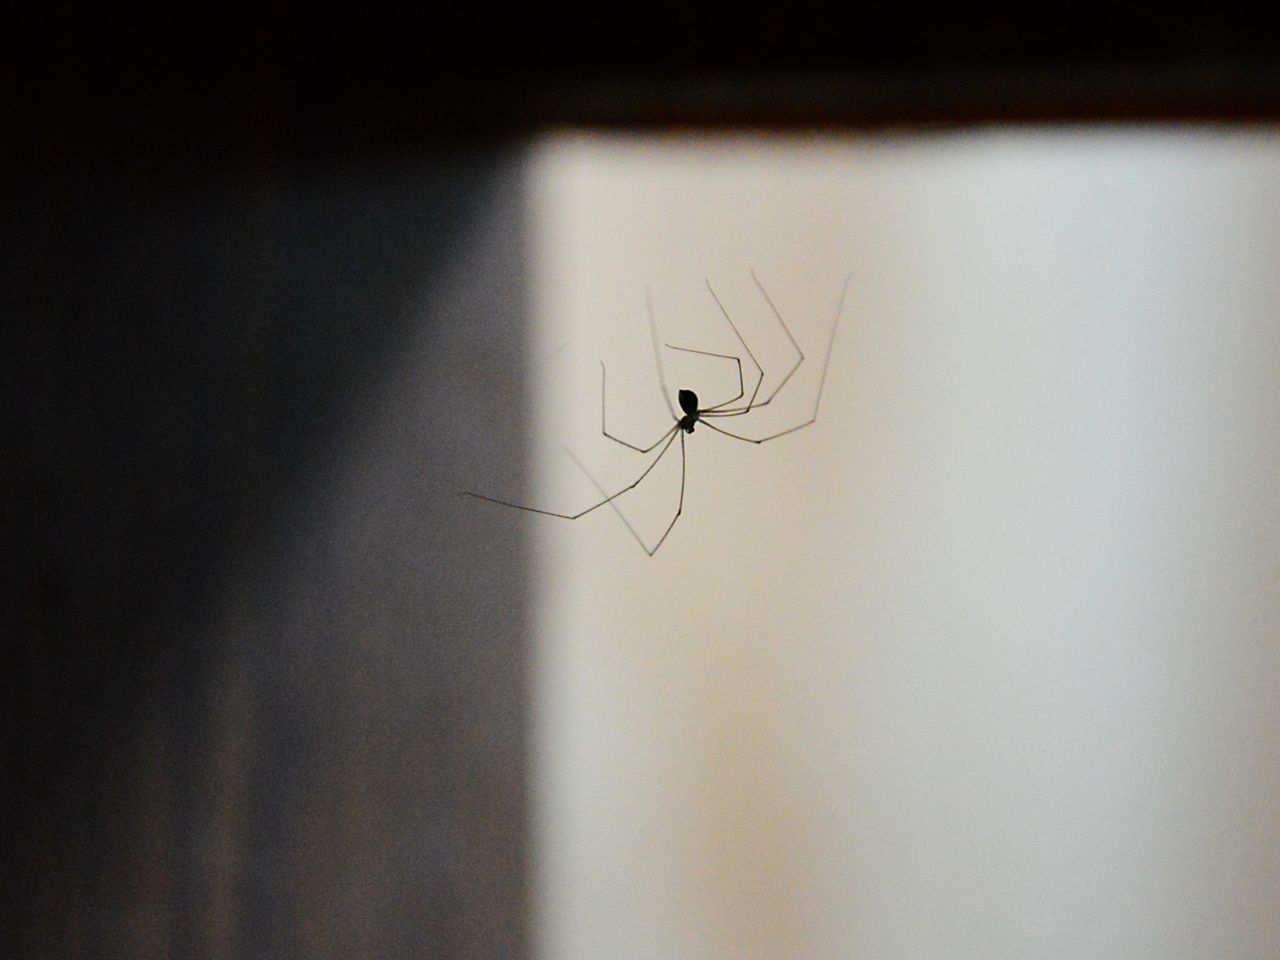 Zabijanie pająków w domu to zły pomysł